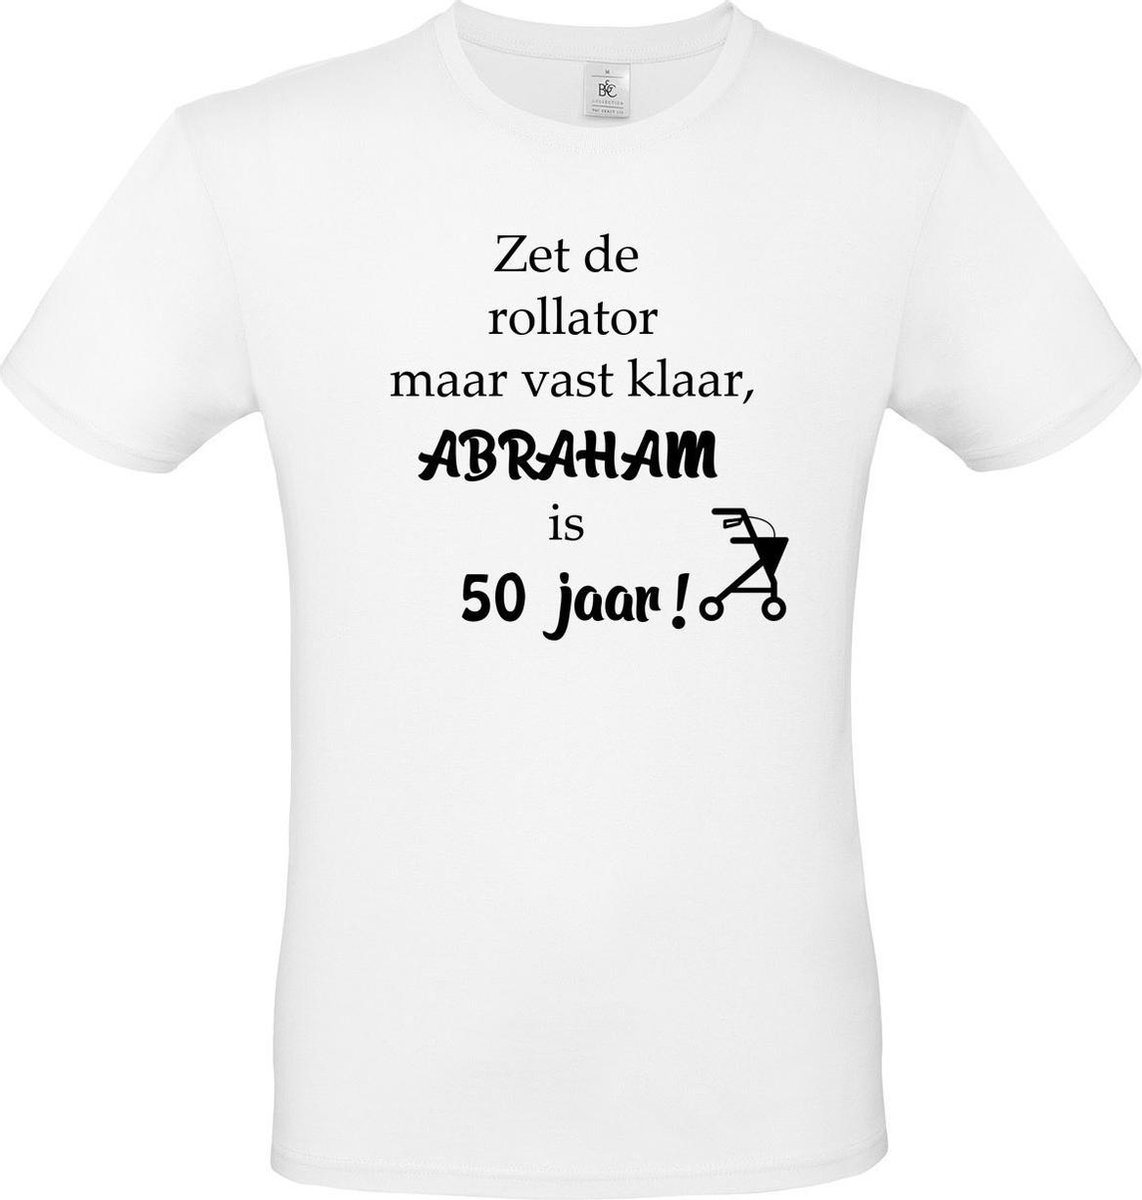 T-shirt met opdruk “Zet de rollator maar vast klaar, Abraham is 50 jaar”, Wit T-shirt met zwarte  opdruk